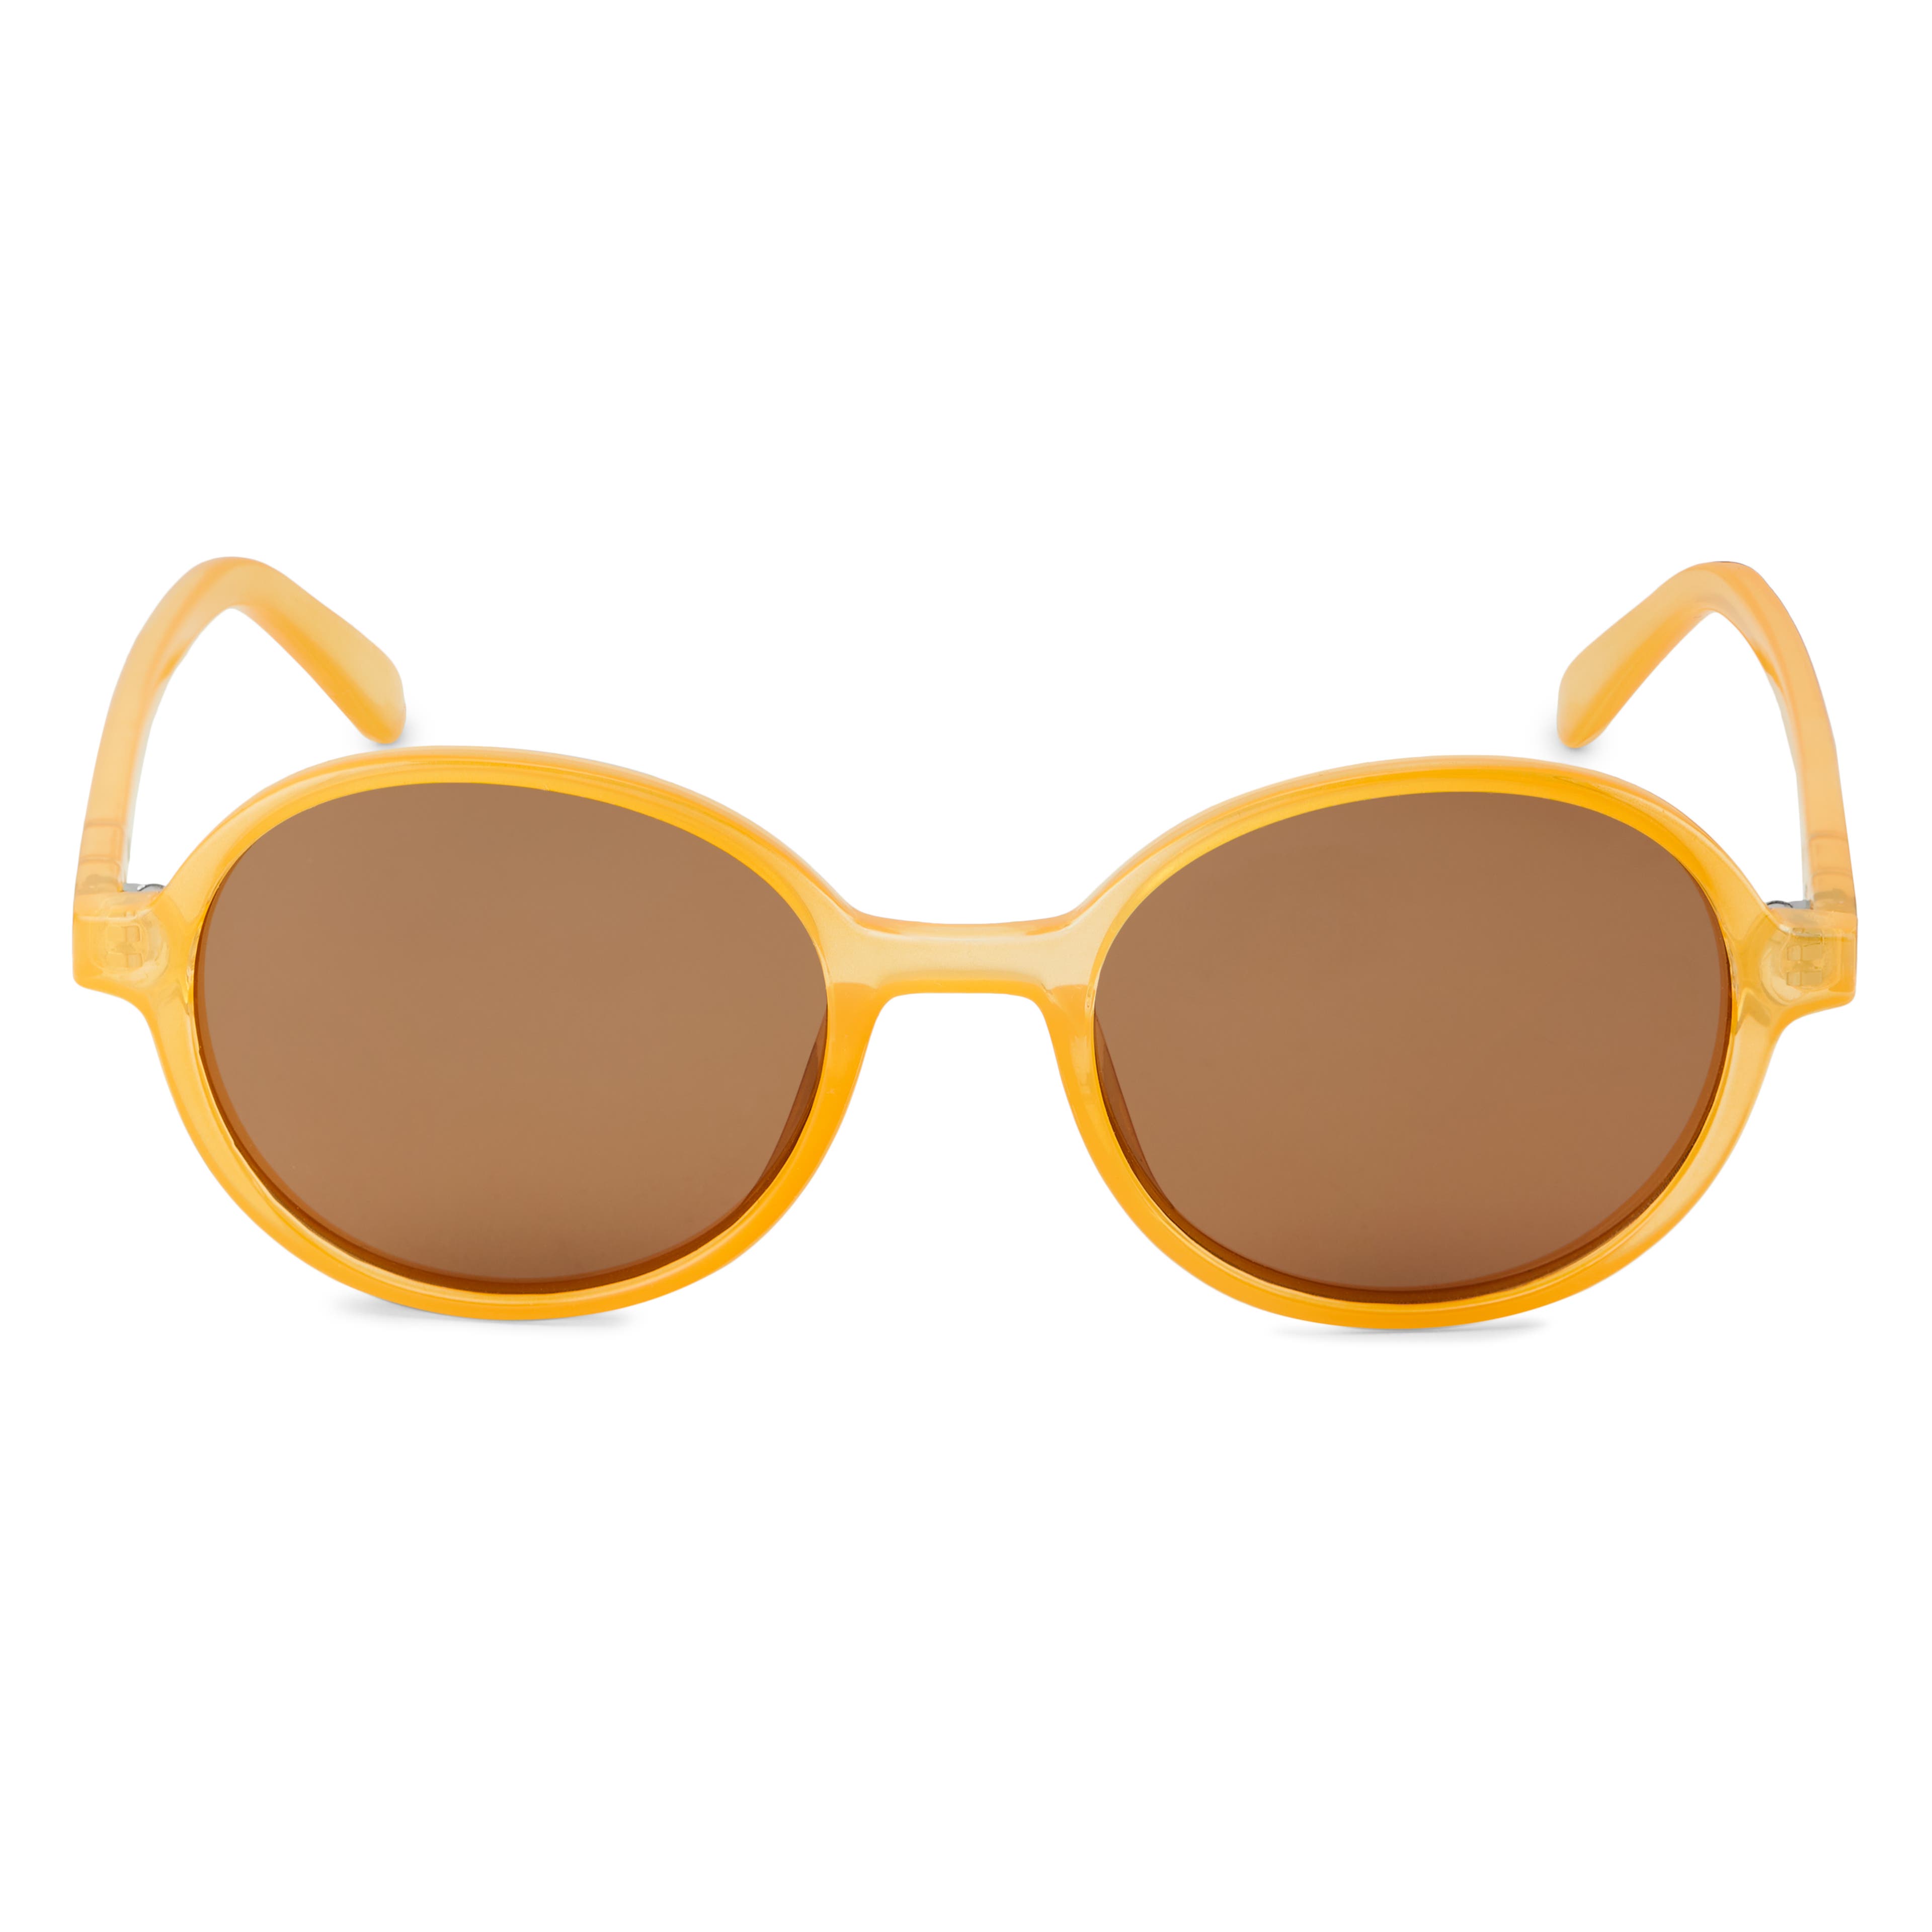 Gafas de sol polarizadas en amarillo y marrón Thea Walford